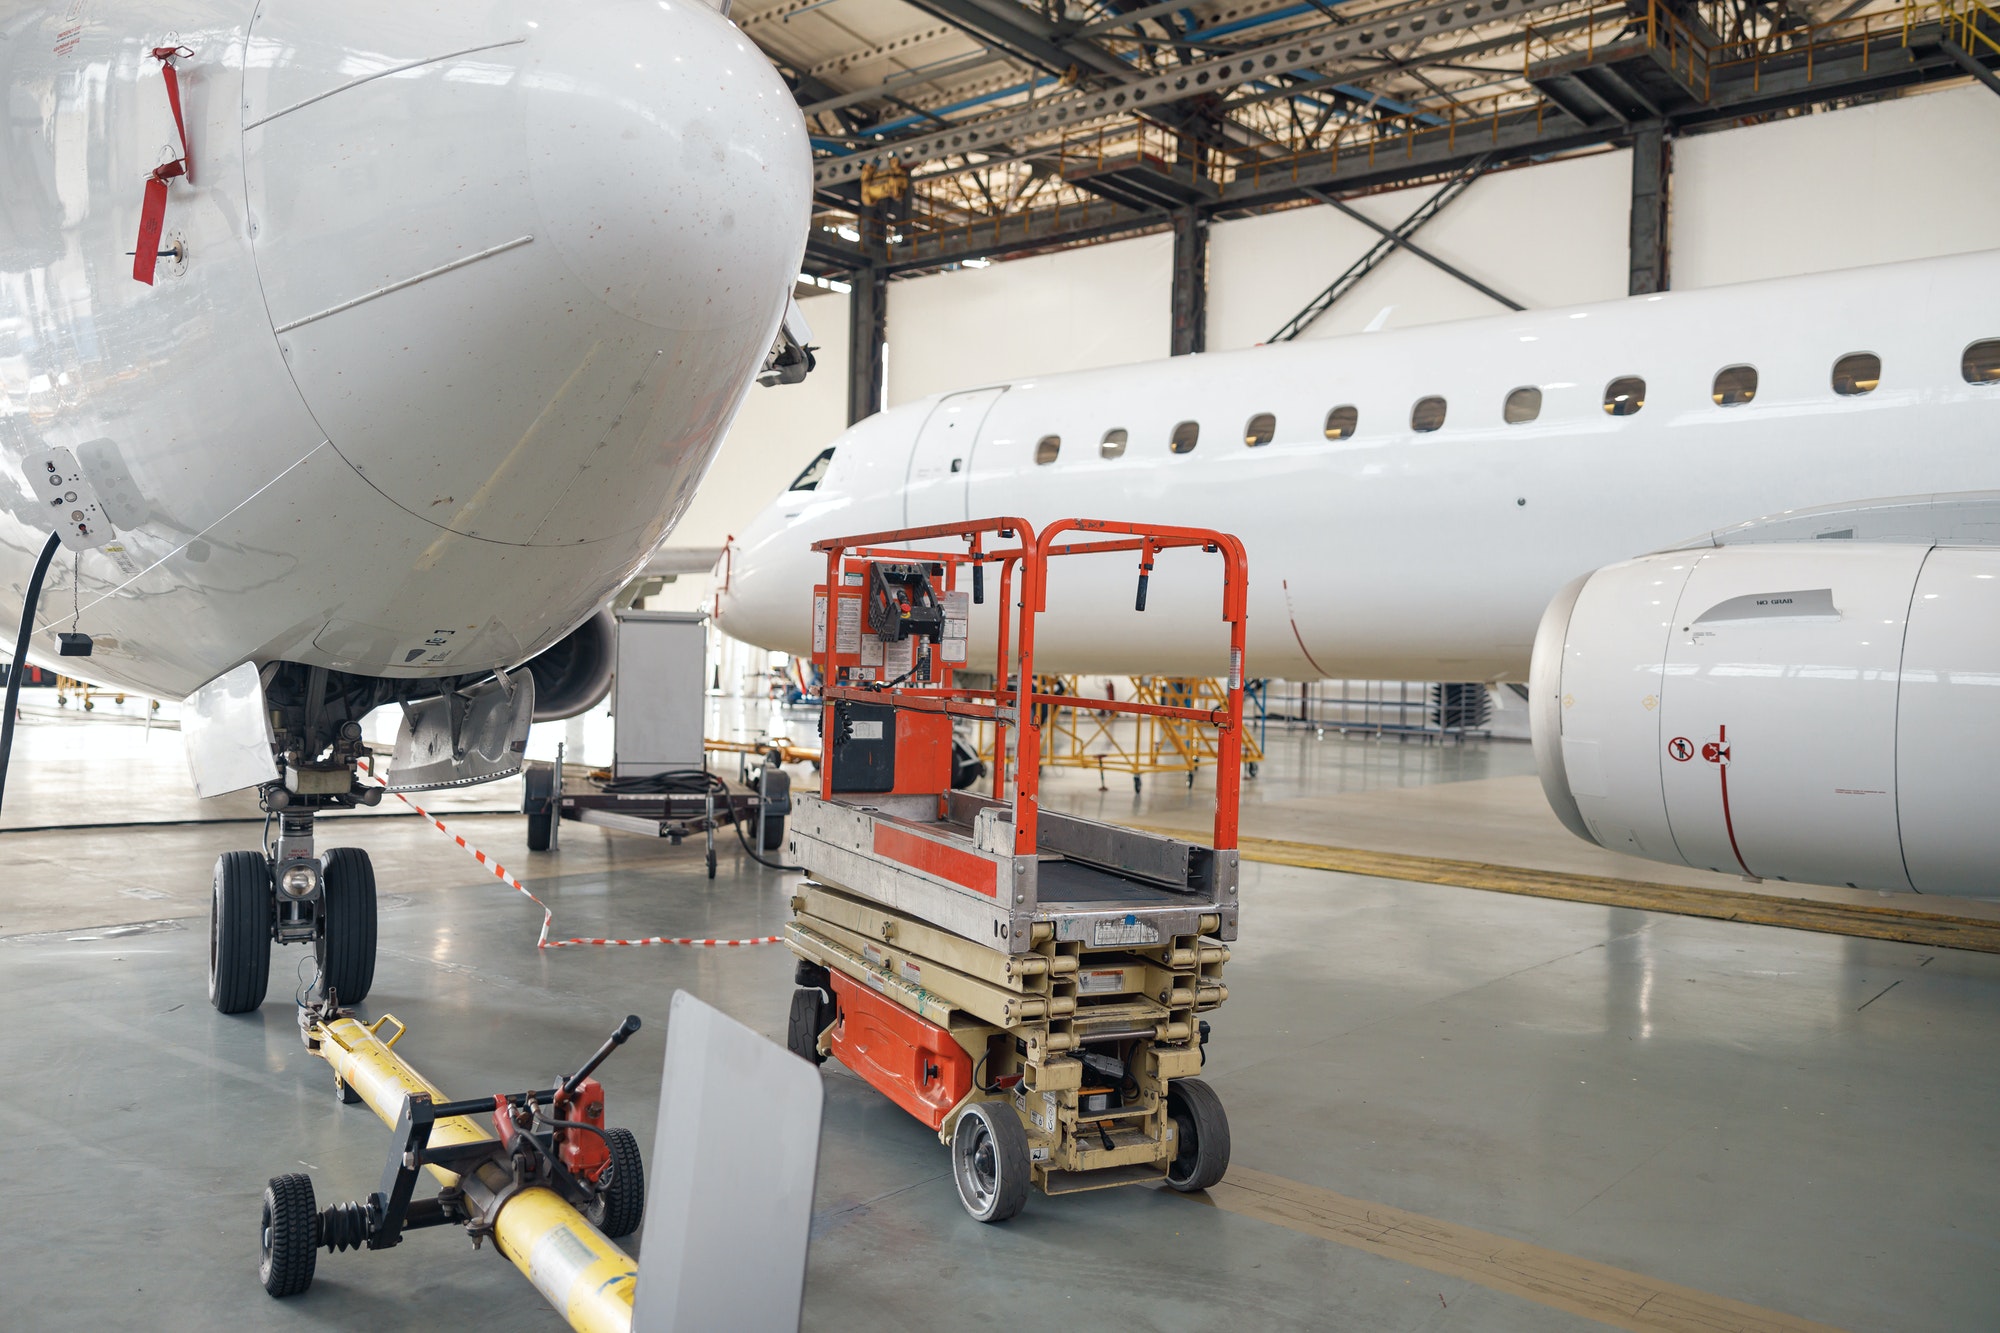 Avion de tourisme en cours de maintenance et de réparation dans un hangar d'aéroport, à l'intérieur, de jour.